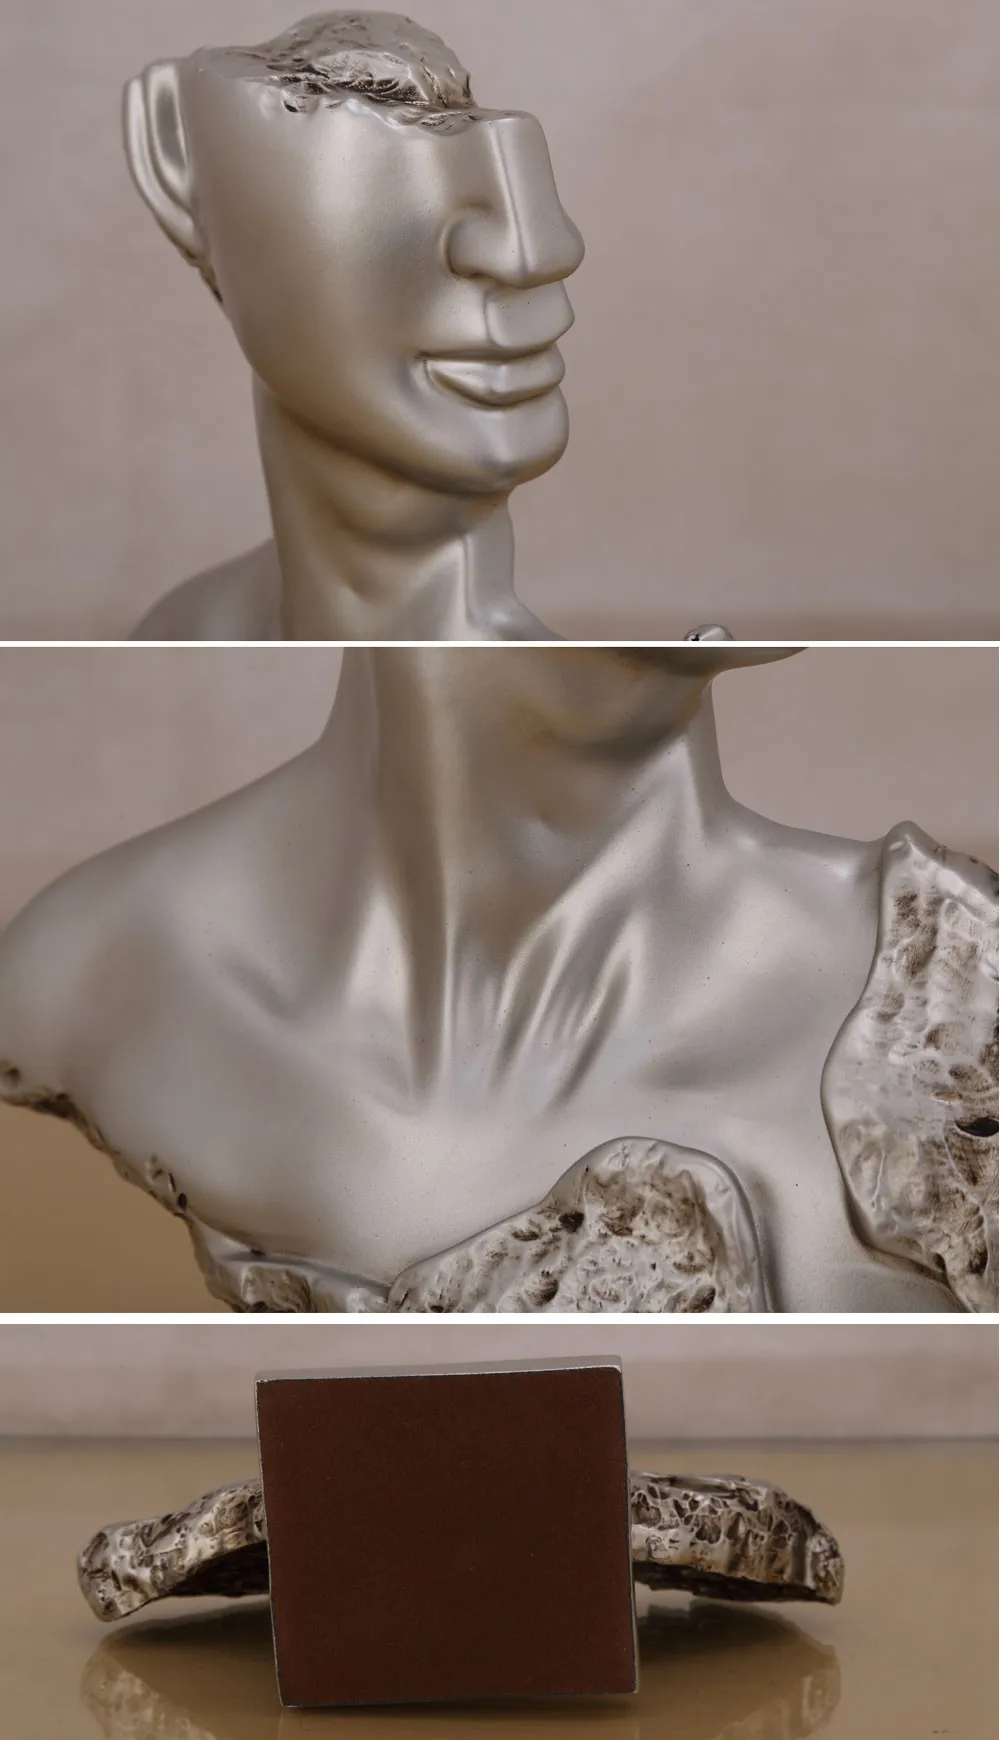 MagiDeal 3D Gothic Cranio Sculture Resina Teste Soprammobili Mestiere Decorazione Casa Bar 